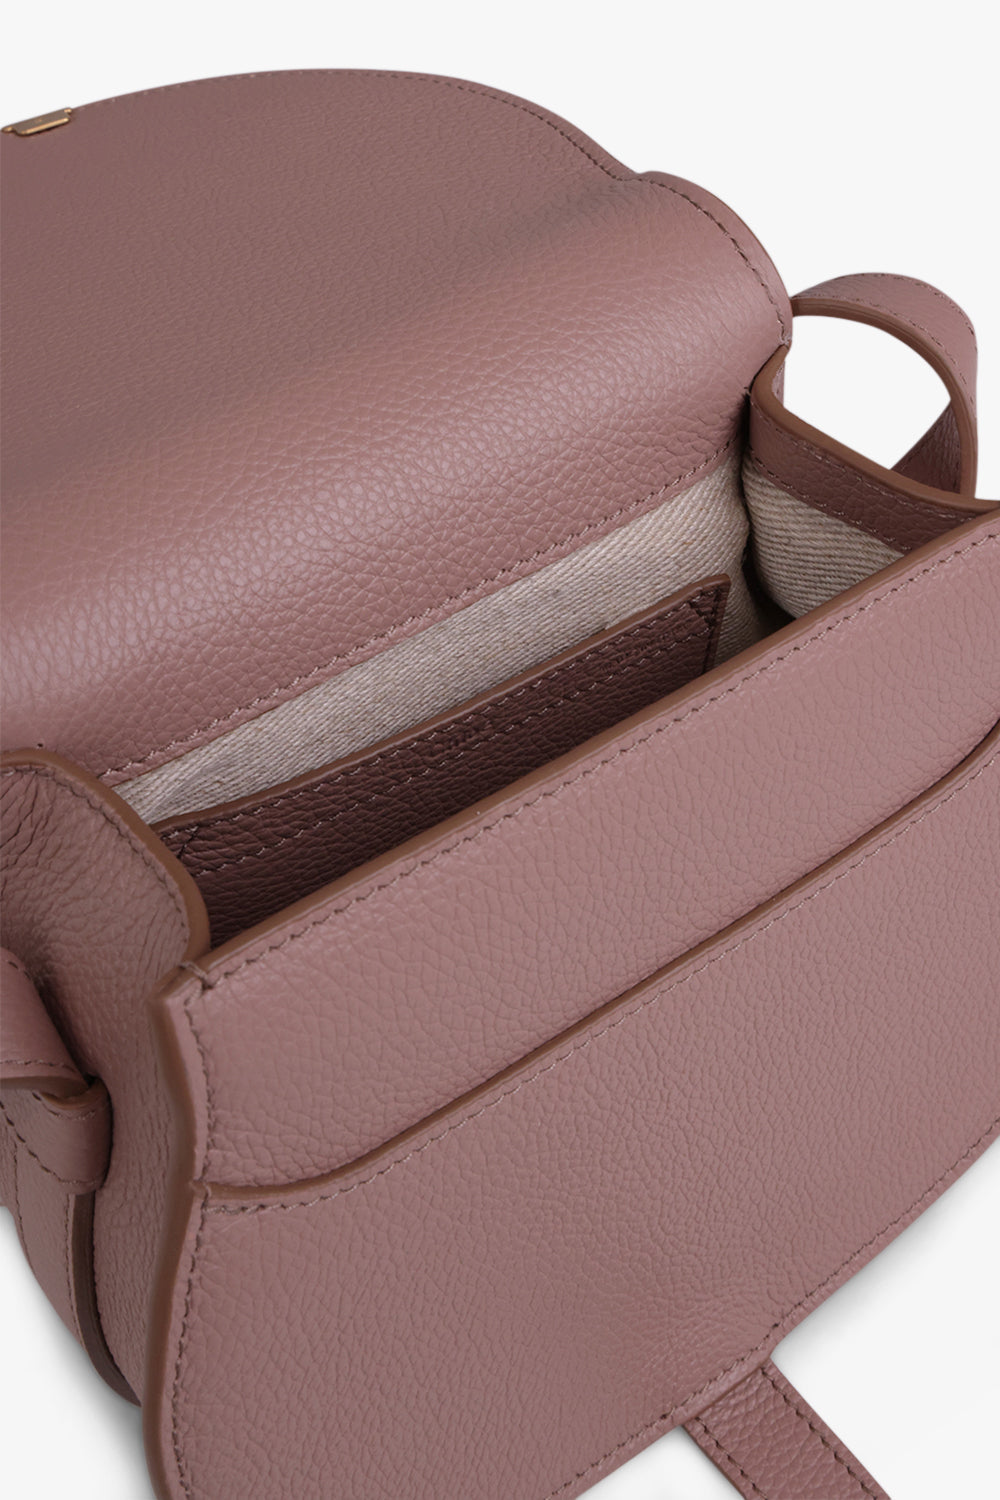 CHLOE BAGS Pink Small Marcie Bag | Woodrose